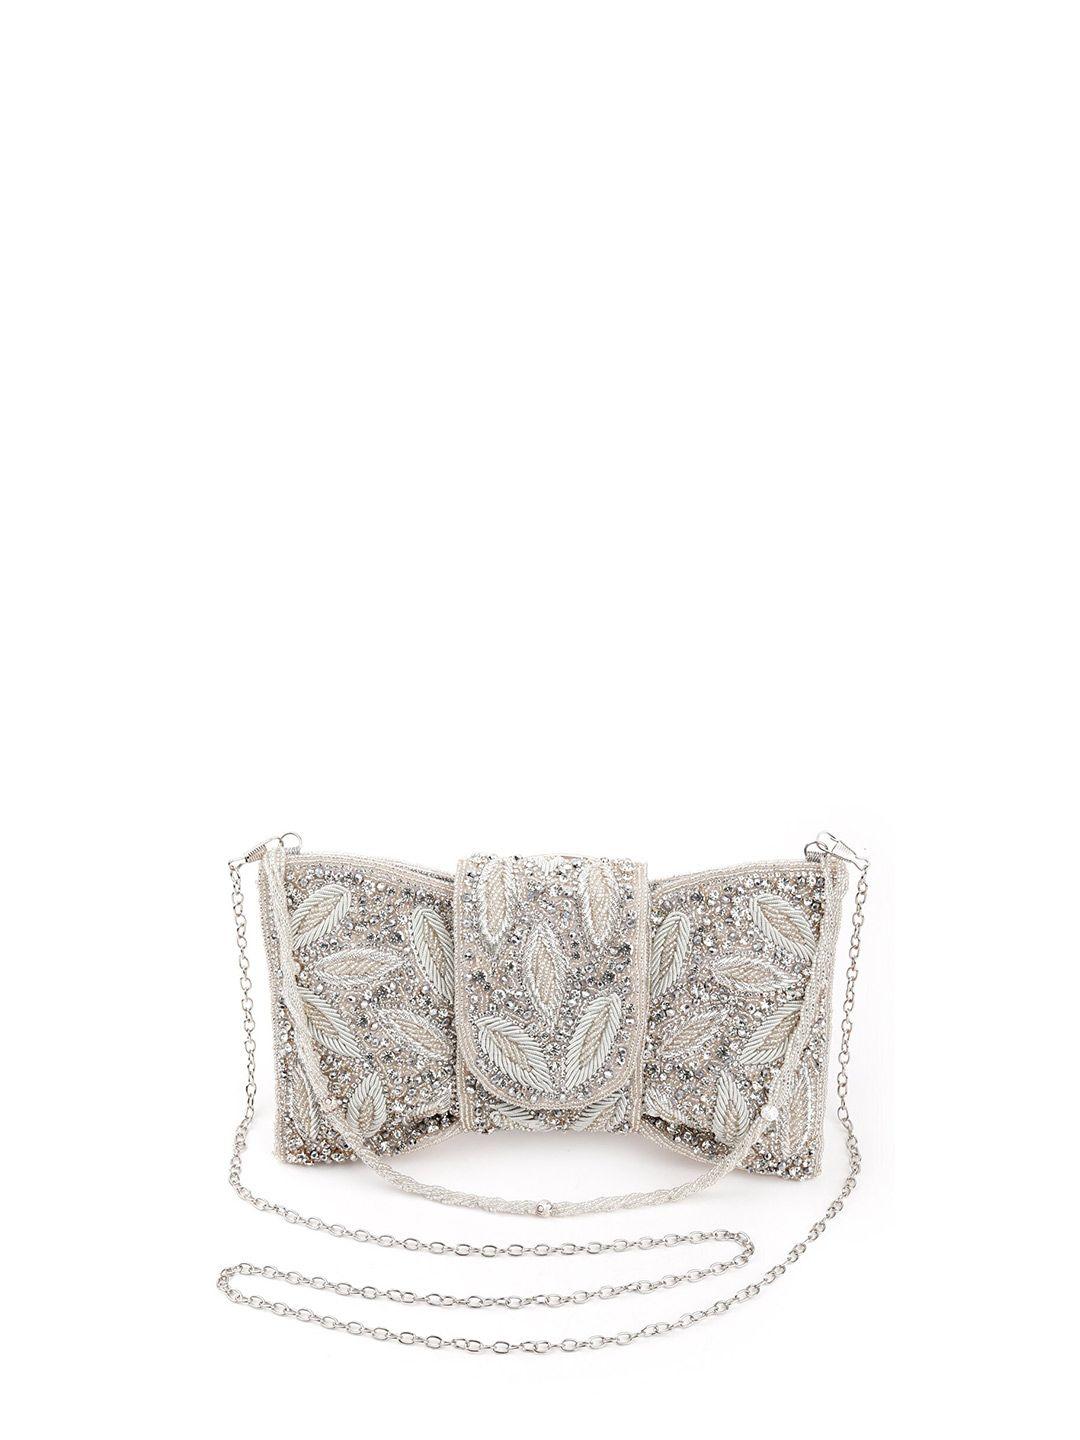 odette embellished purse clutch